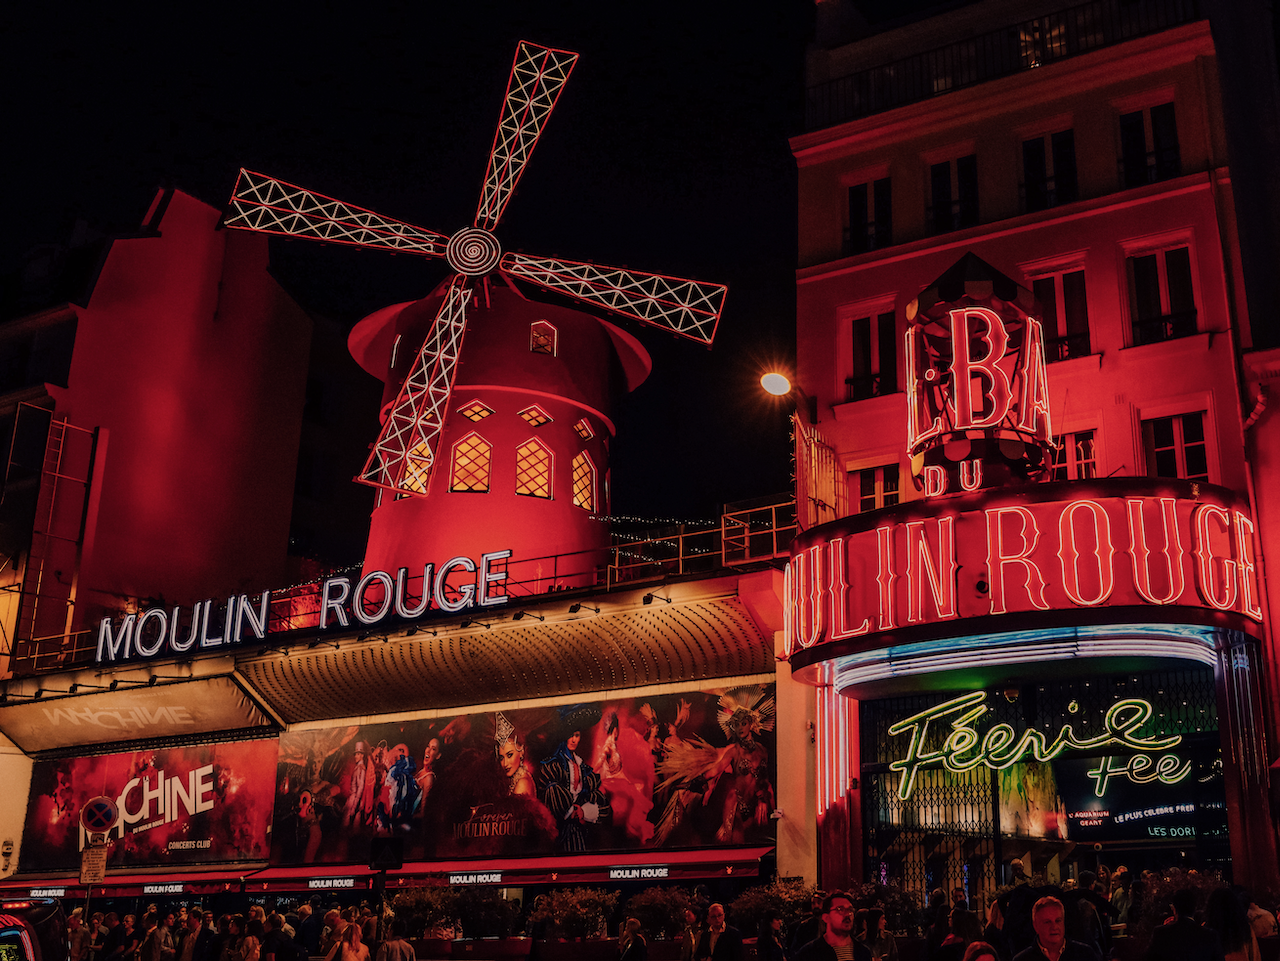 Le Moulin Rouge de nuit - Paris - France